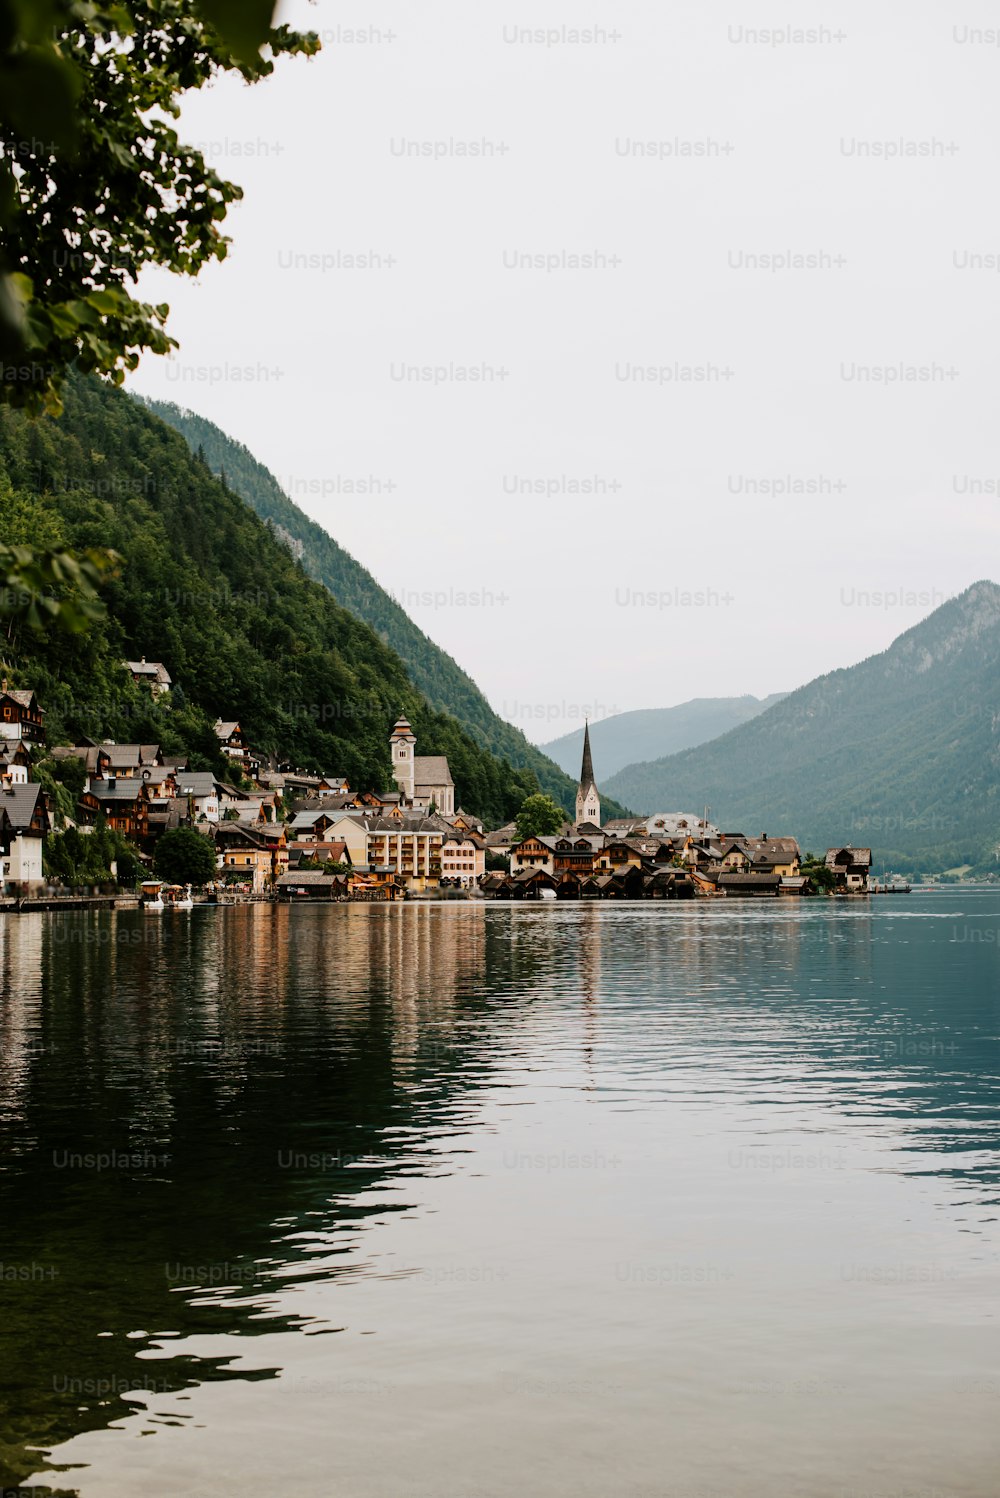 uma pequena aldeia em um lago cercado por montanhas